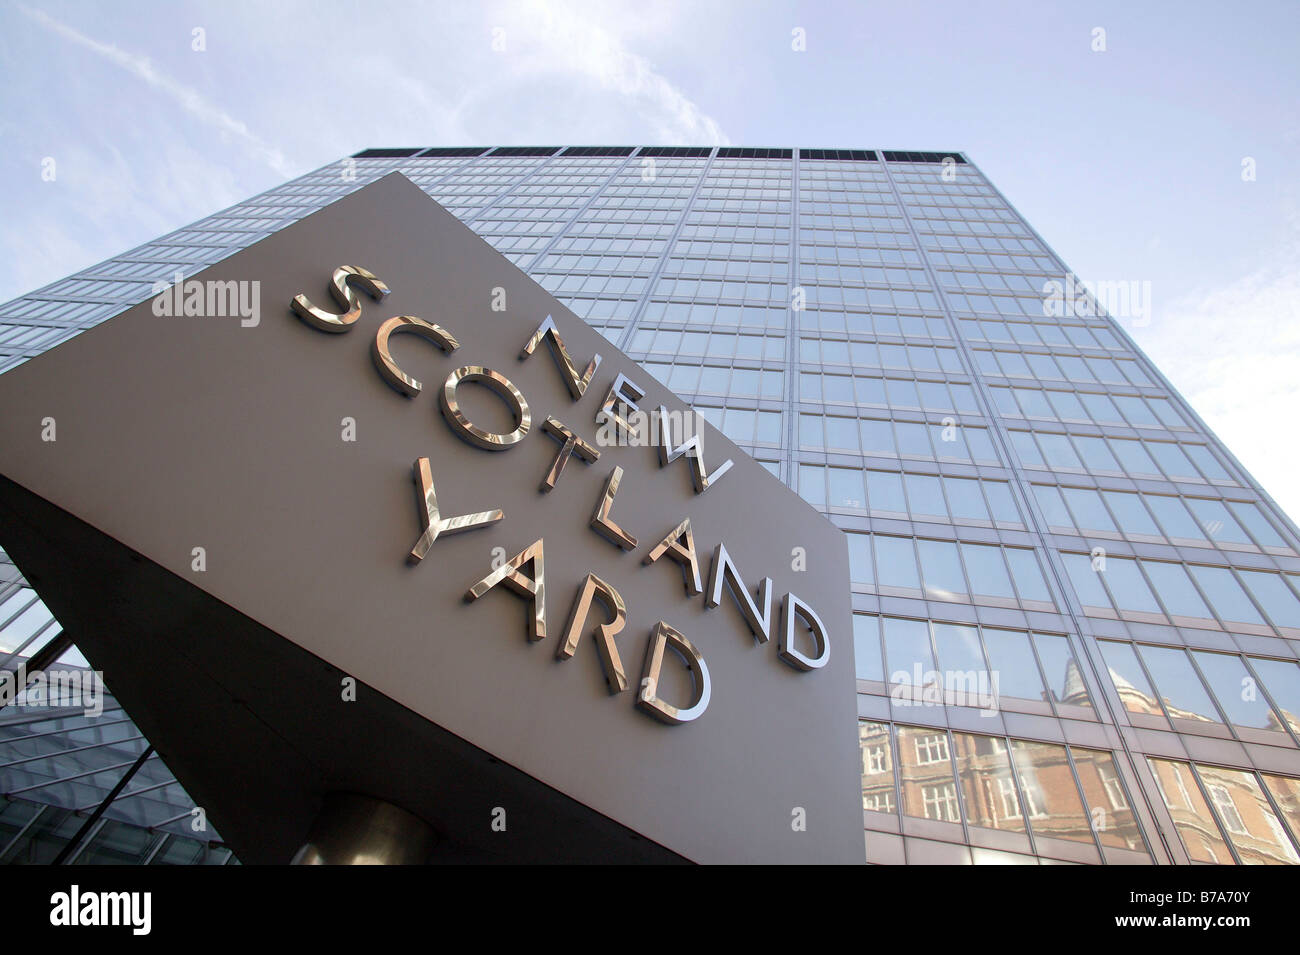 Bau von New Scotland Yard in London, England, Großbritannien, Europa Stockfoto